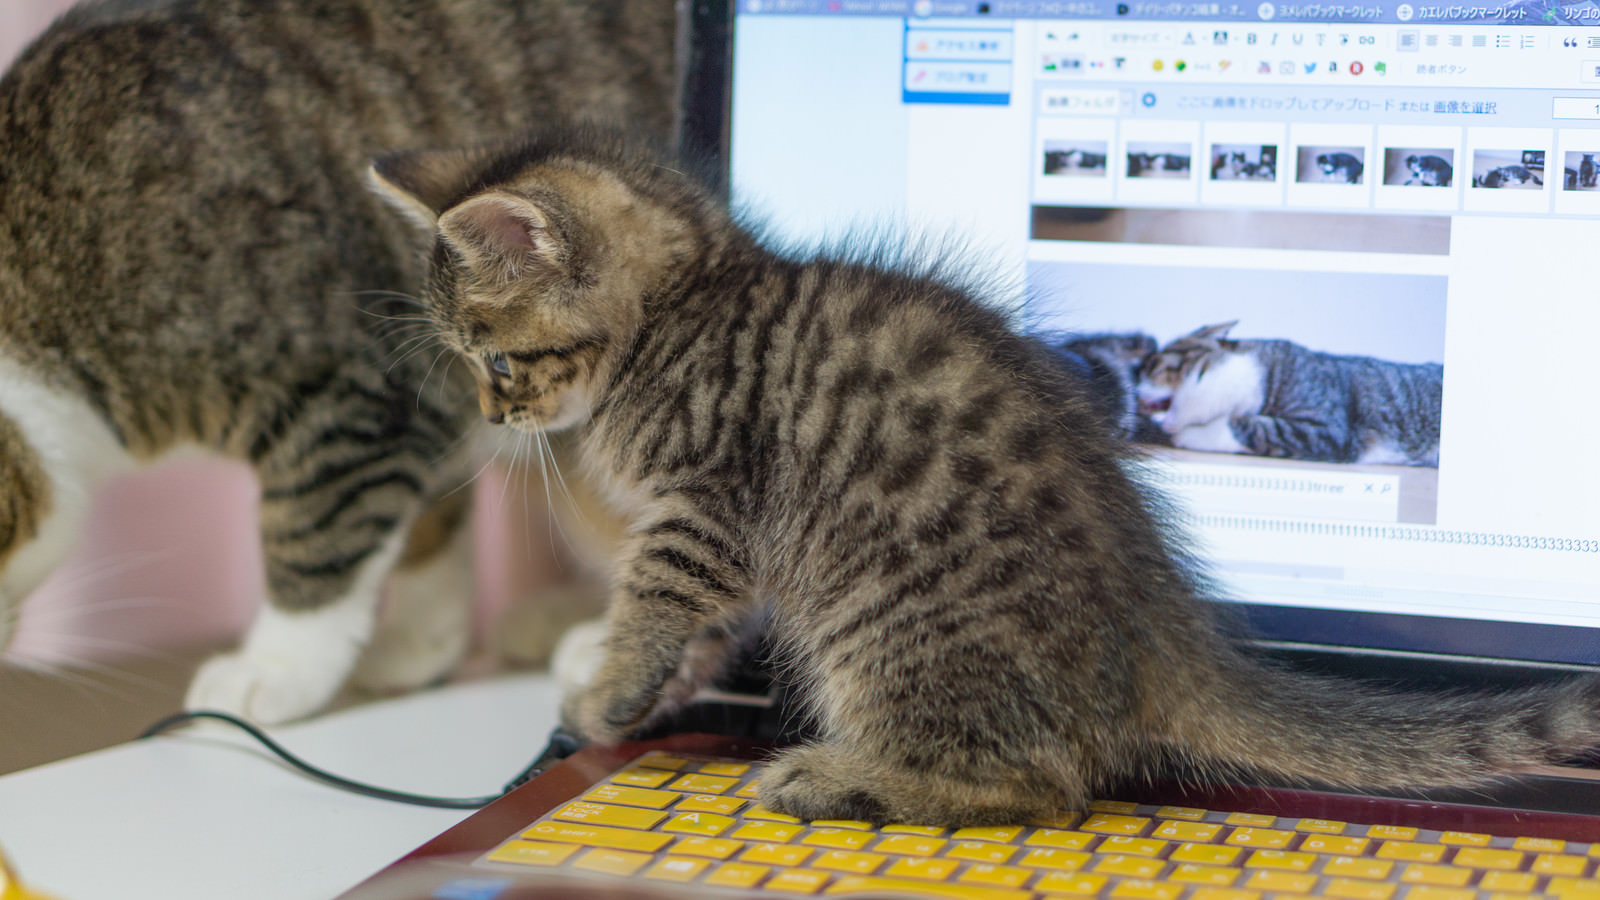 「子猫が邪魔でパソコンが使えません... | フリー素材のぱくたそ」の写真